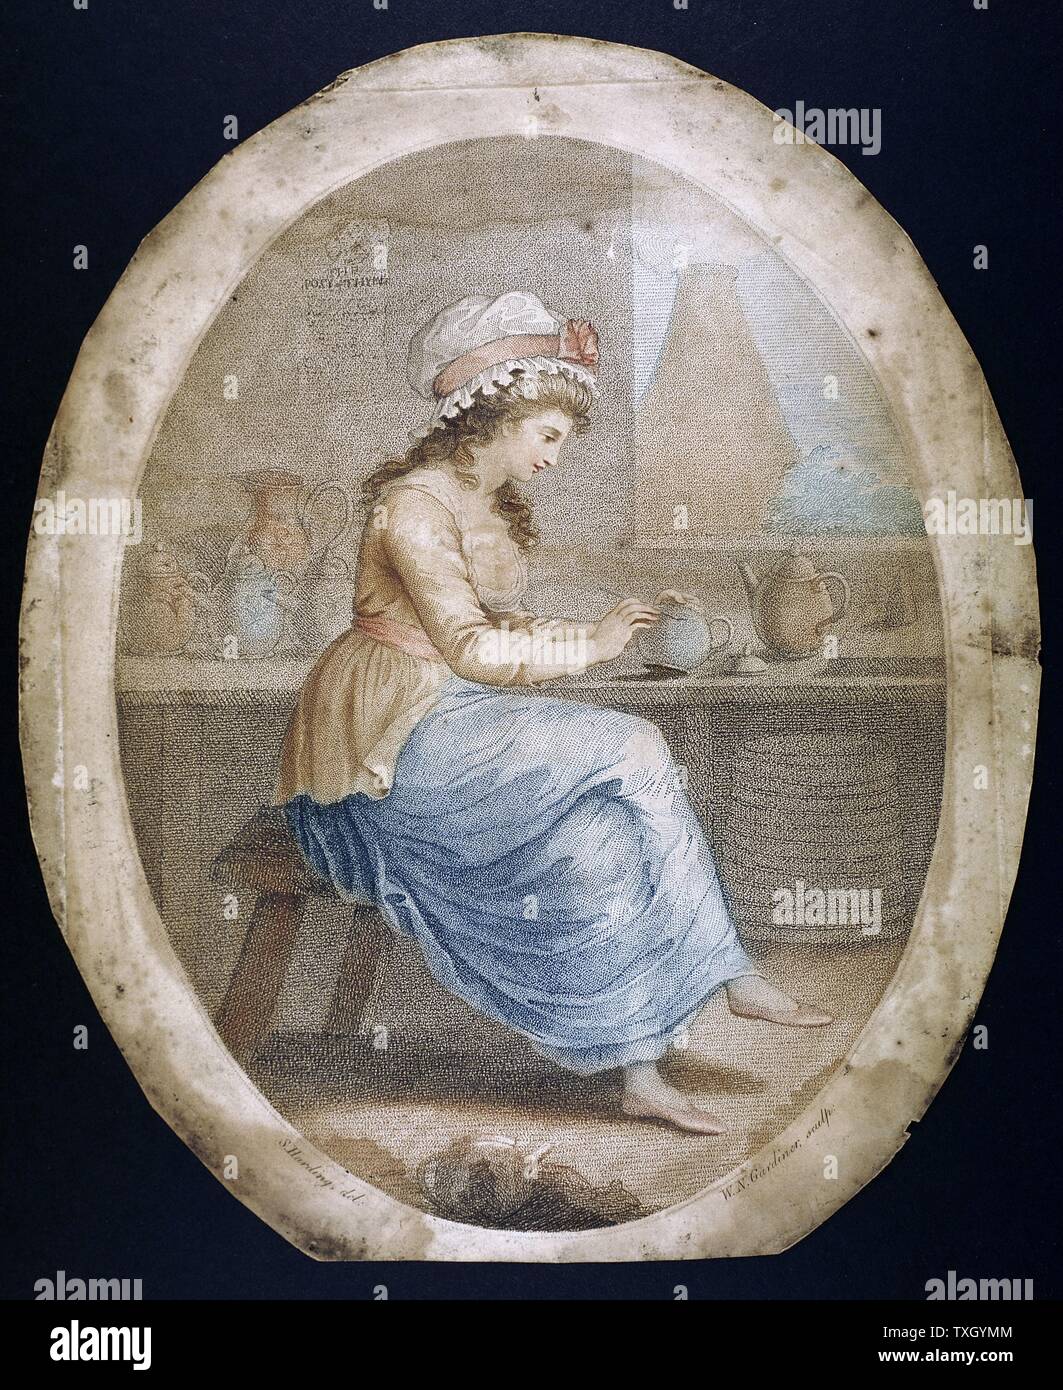 La ragazza di Staffordshire: mezzatinta da WN Gardner (1766-1814) dopo foto di Sylvester Harding (1745-1809) ragazza è la decorazione di Staffordshire ware in fabbrica. In background è un forno in ceramica. Foto Stock